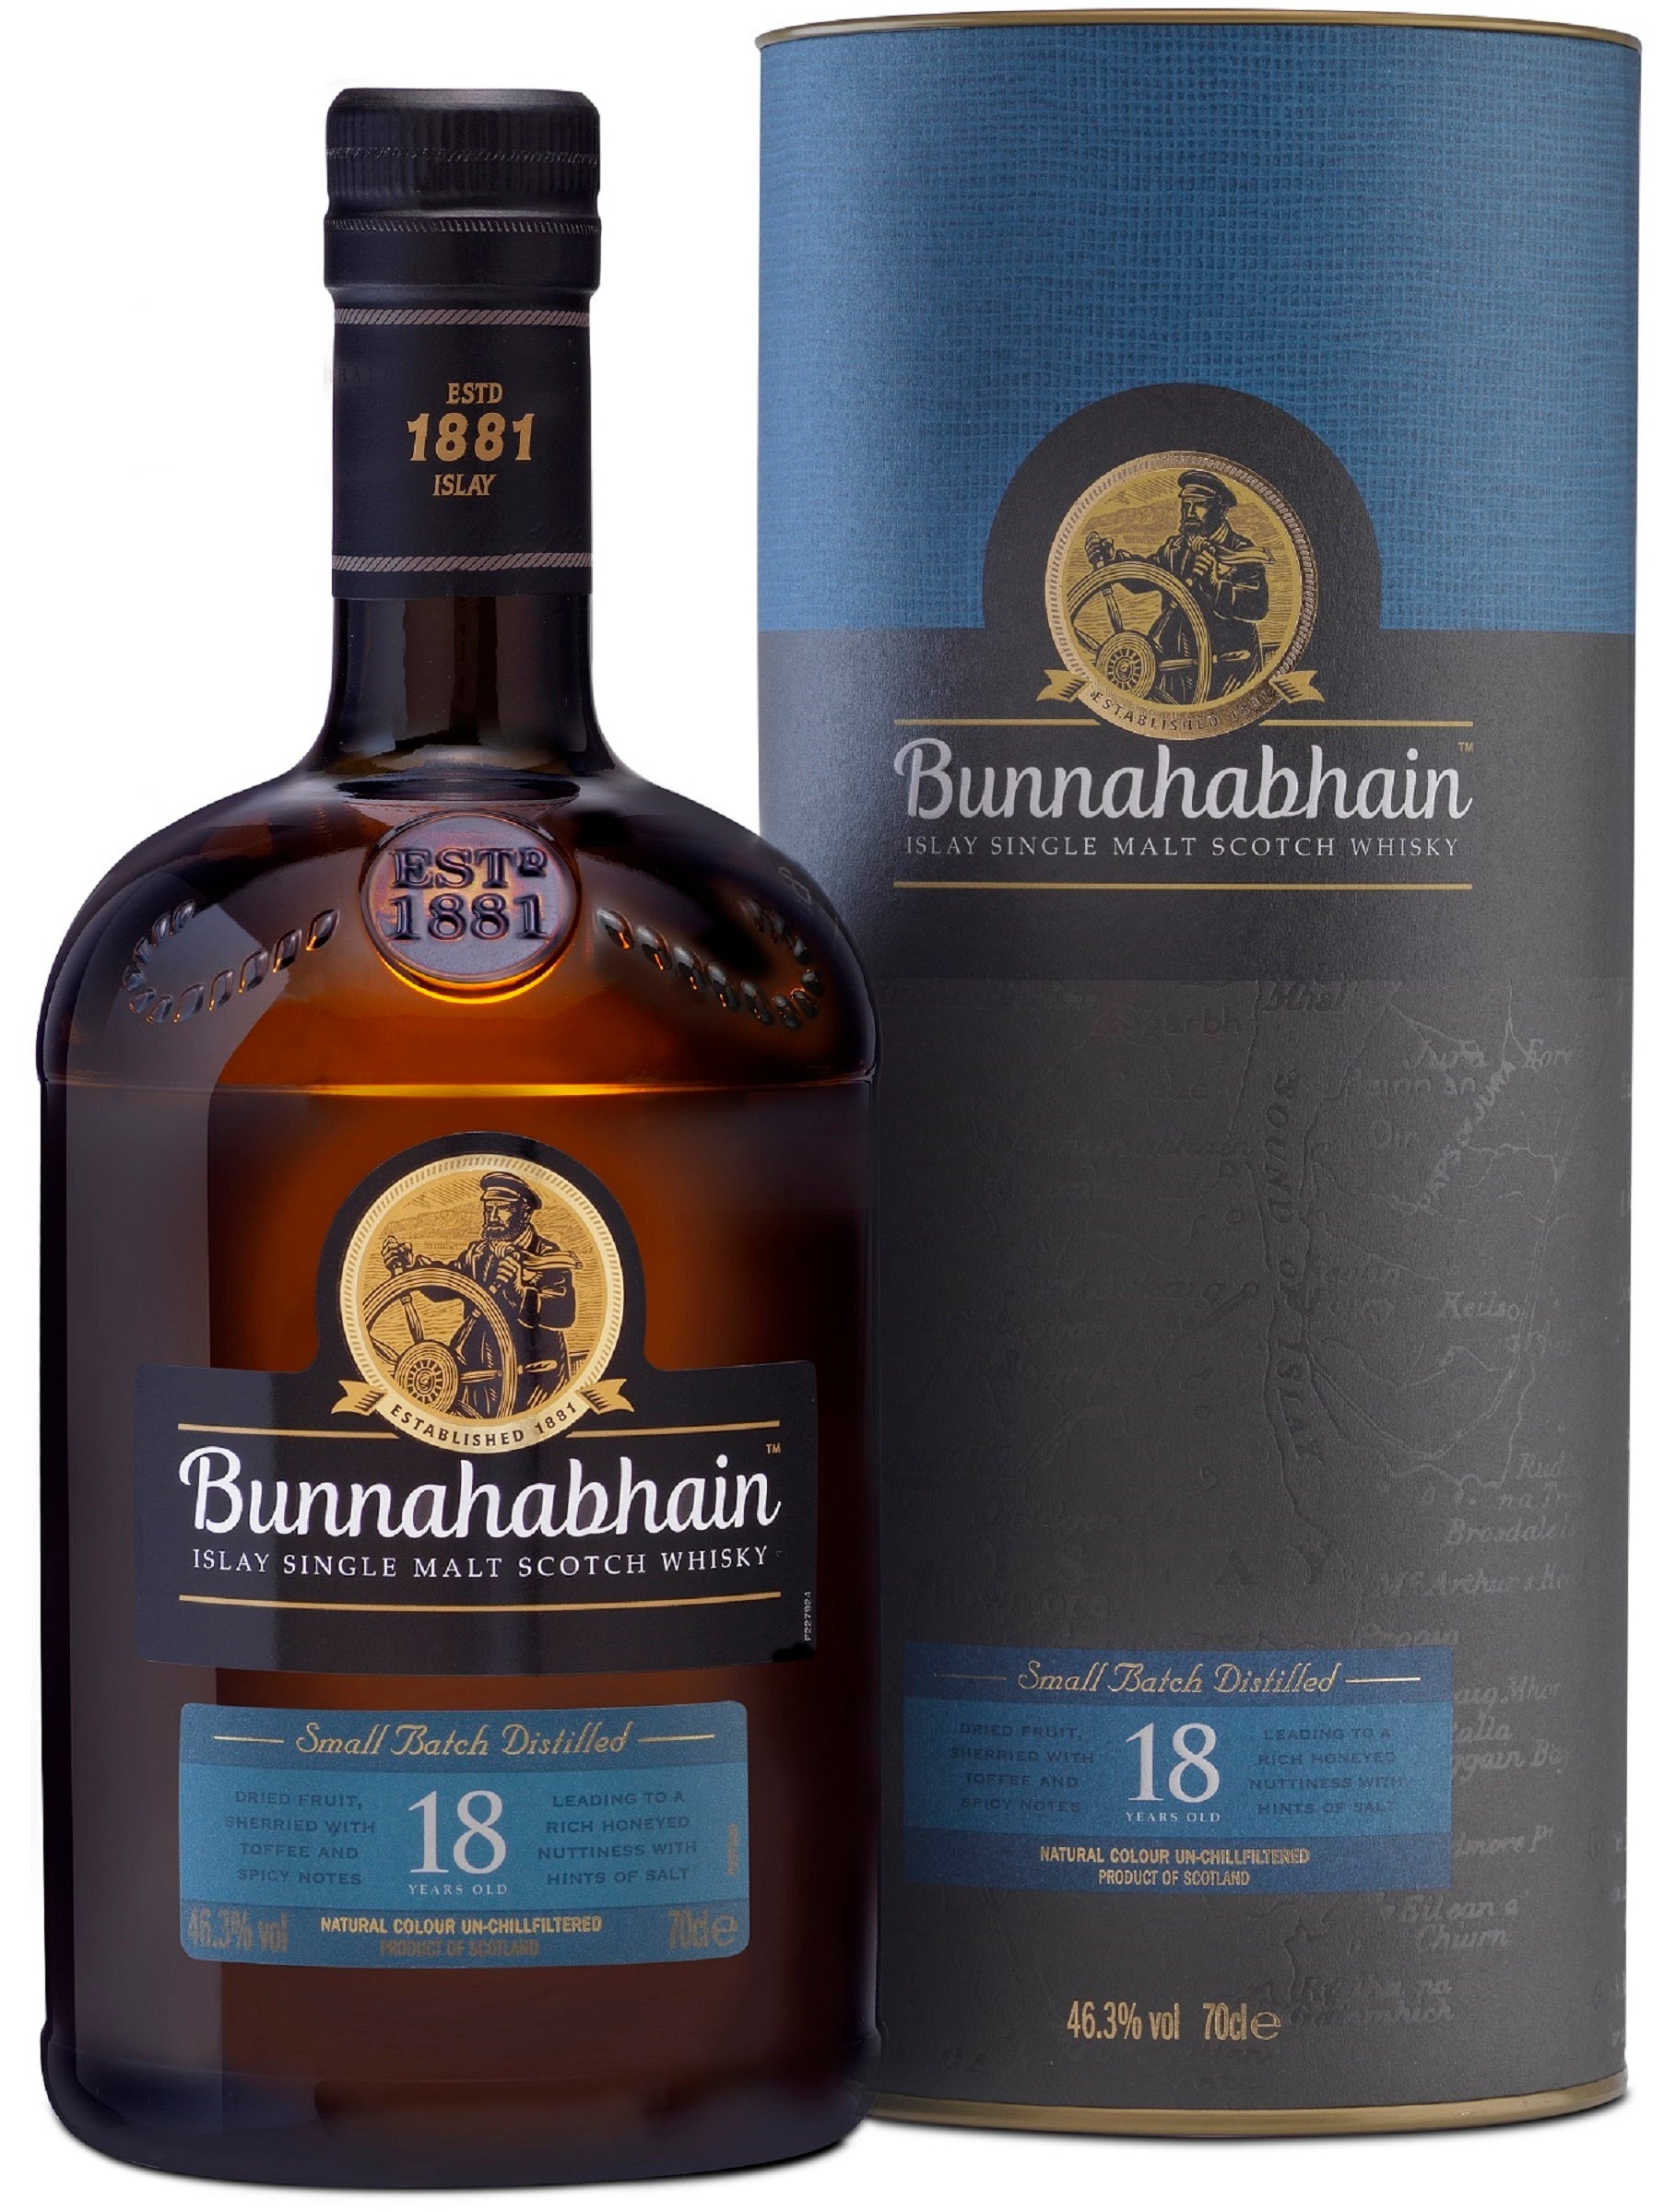 Bottle of Bunnahabhain 18-Year-Old Islay Single Malt Scotch Whisky, 46.3% - The Spirits Room